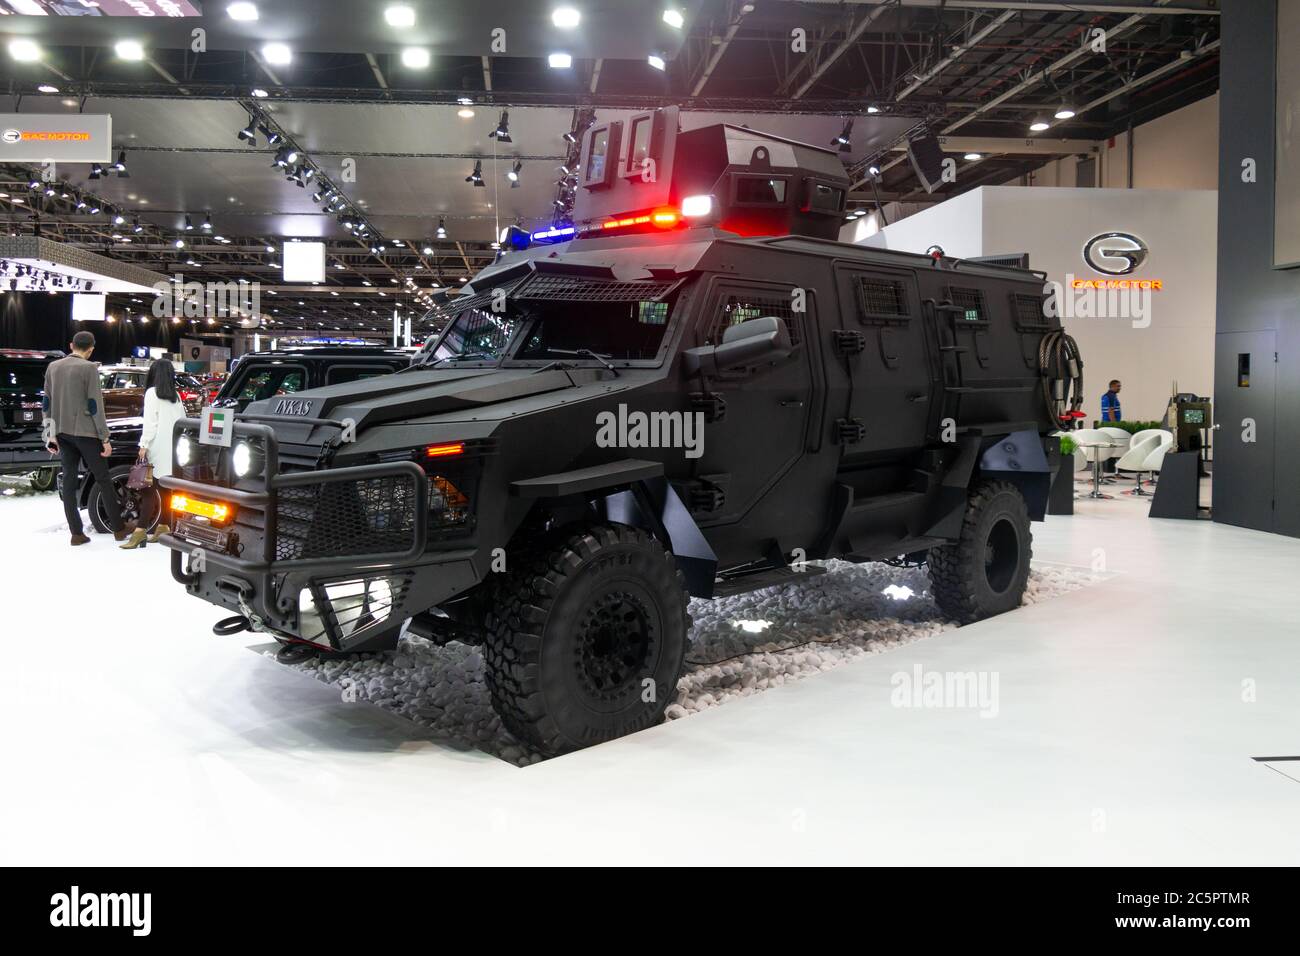 Veicolo corazzato di alta qualità esposto in un'esposizione di automobili, di sicurezza e di lusso | INKAS Foto Stock